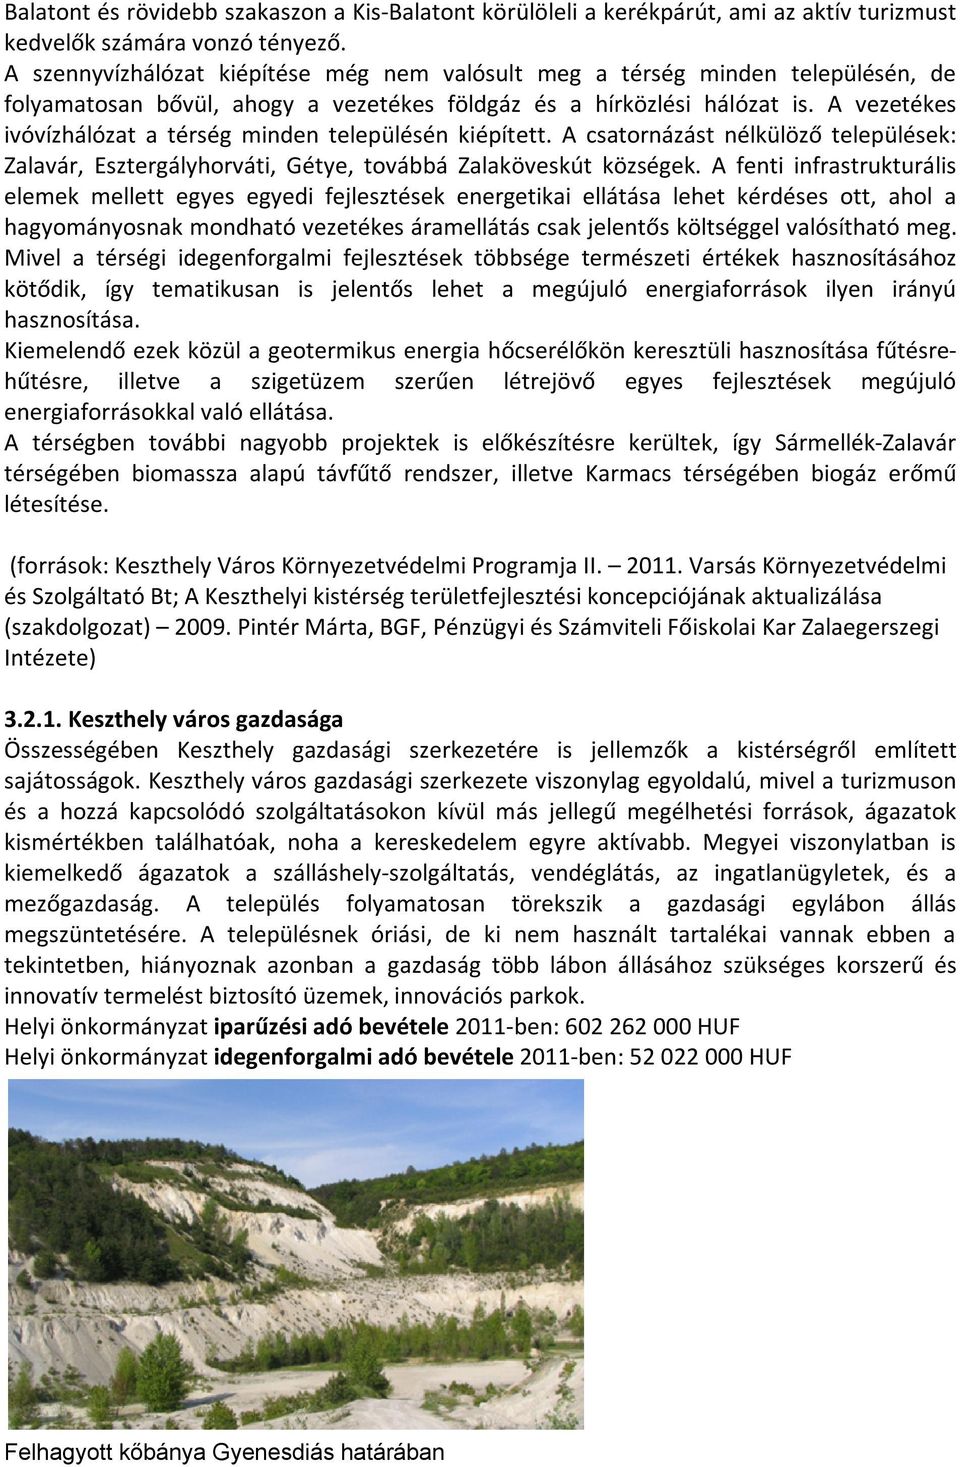 A vezetékes ivóvízhálózat a térség minden településén kiépített. A csatornázást nélkülöző települések: Zalavár, Esztergályhorváti, Gétye, továbbá Zalaköveskút községek.